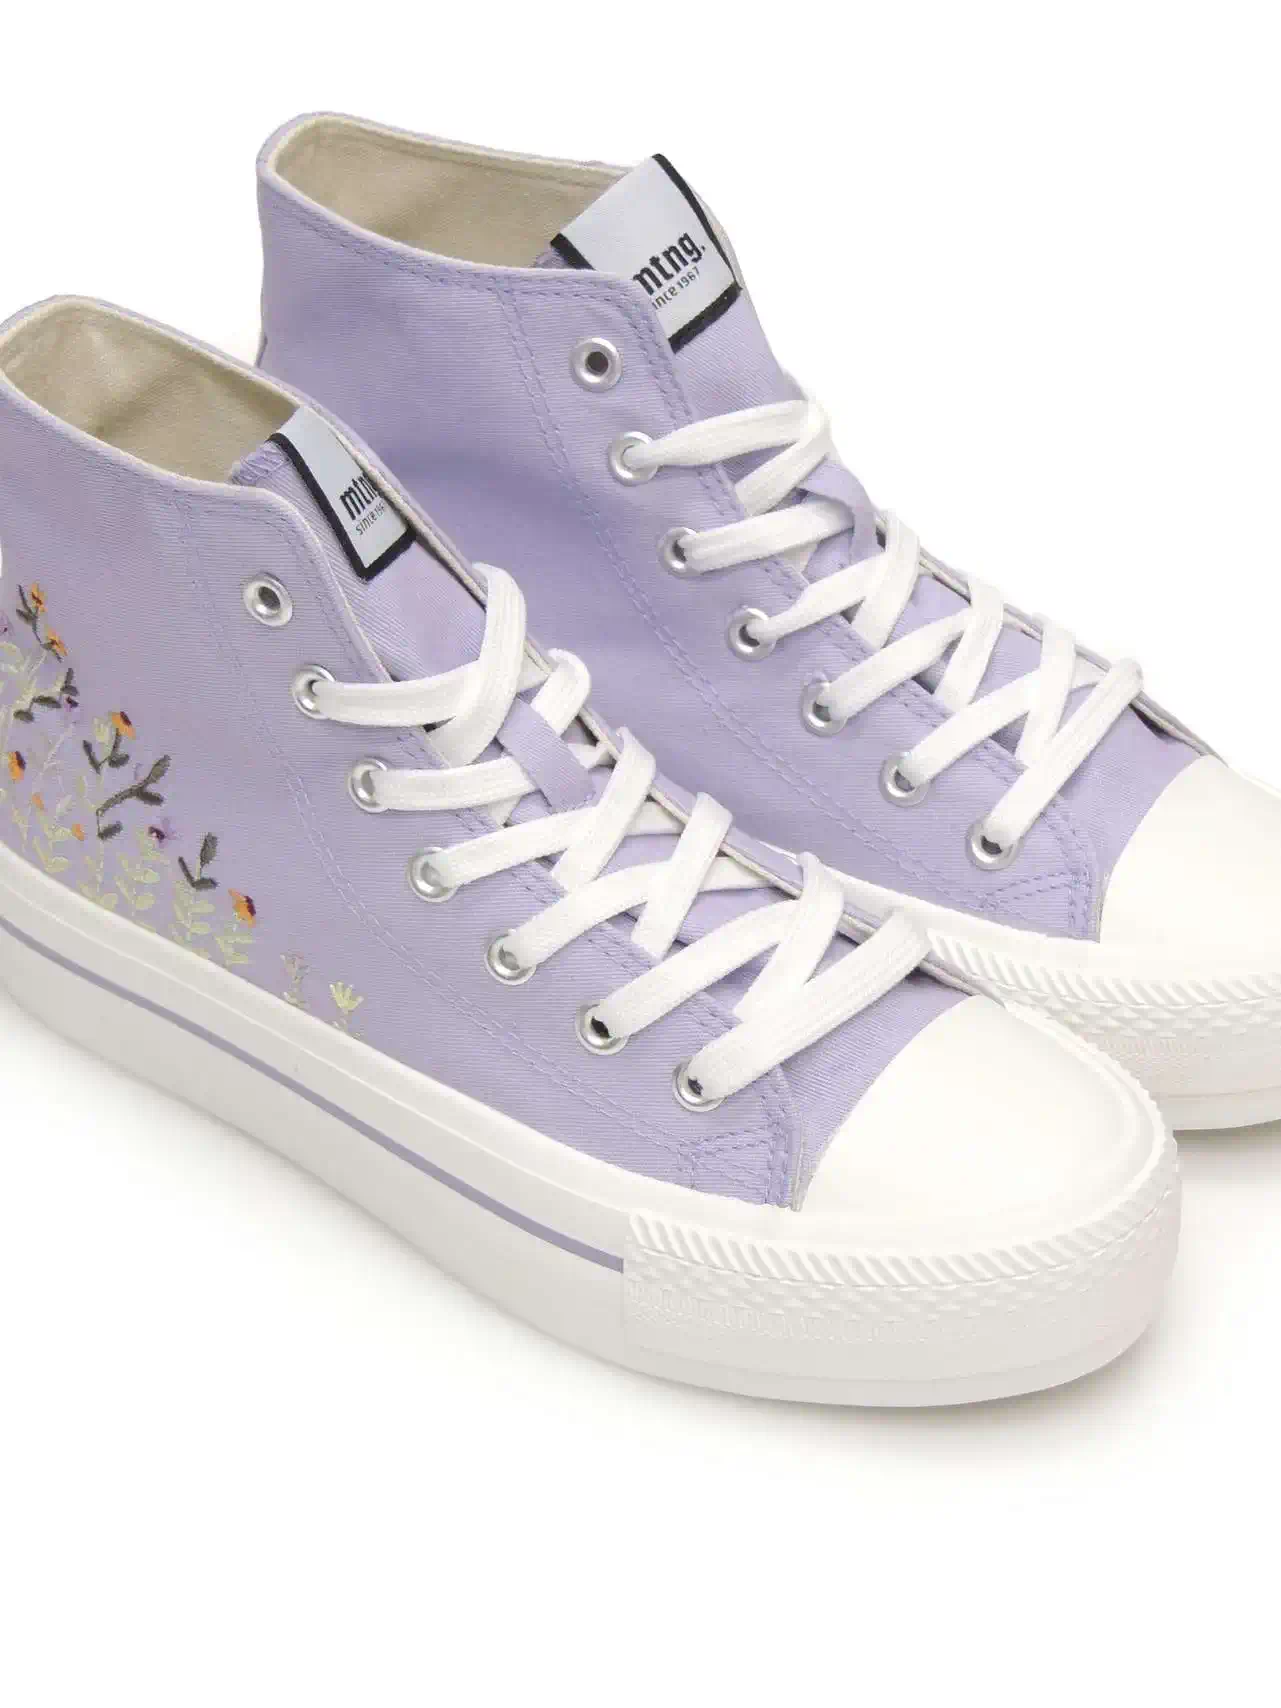 sneakers--mustang-60172-lona-violeta